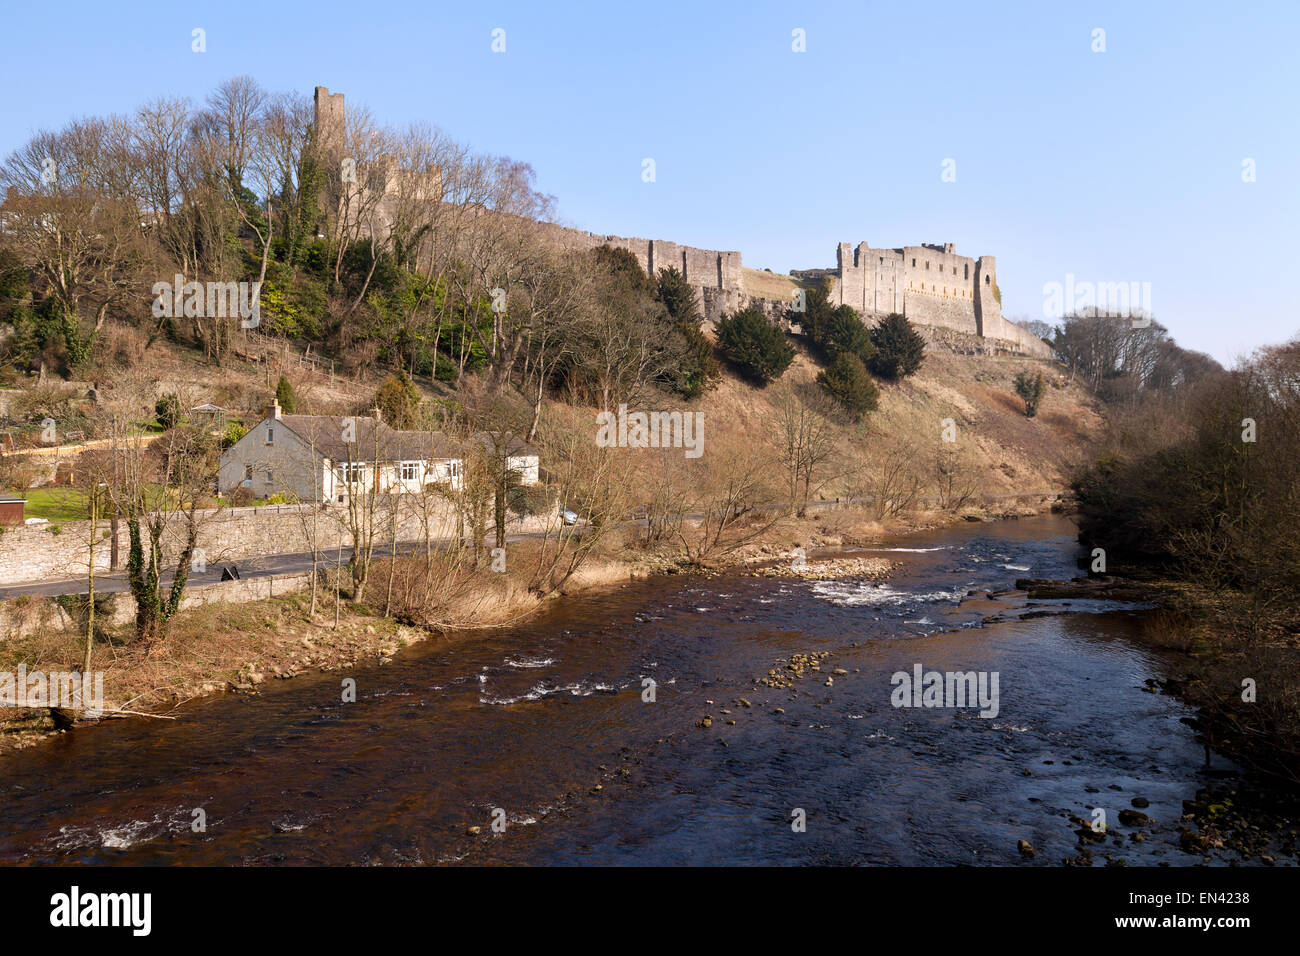 La rivière Swale et Château de Richmond, Richmond Yorkshire Angleterre UK Banque D'Images